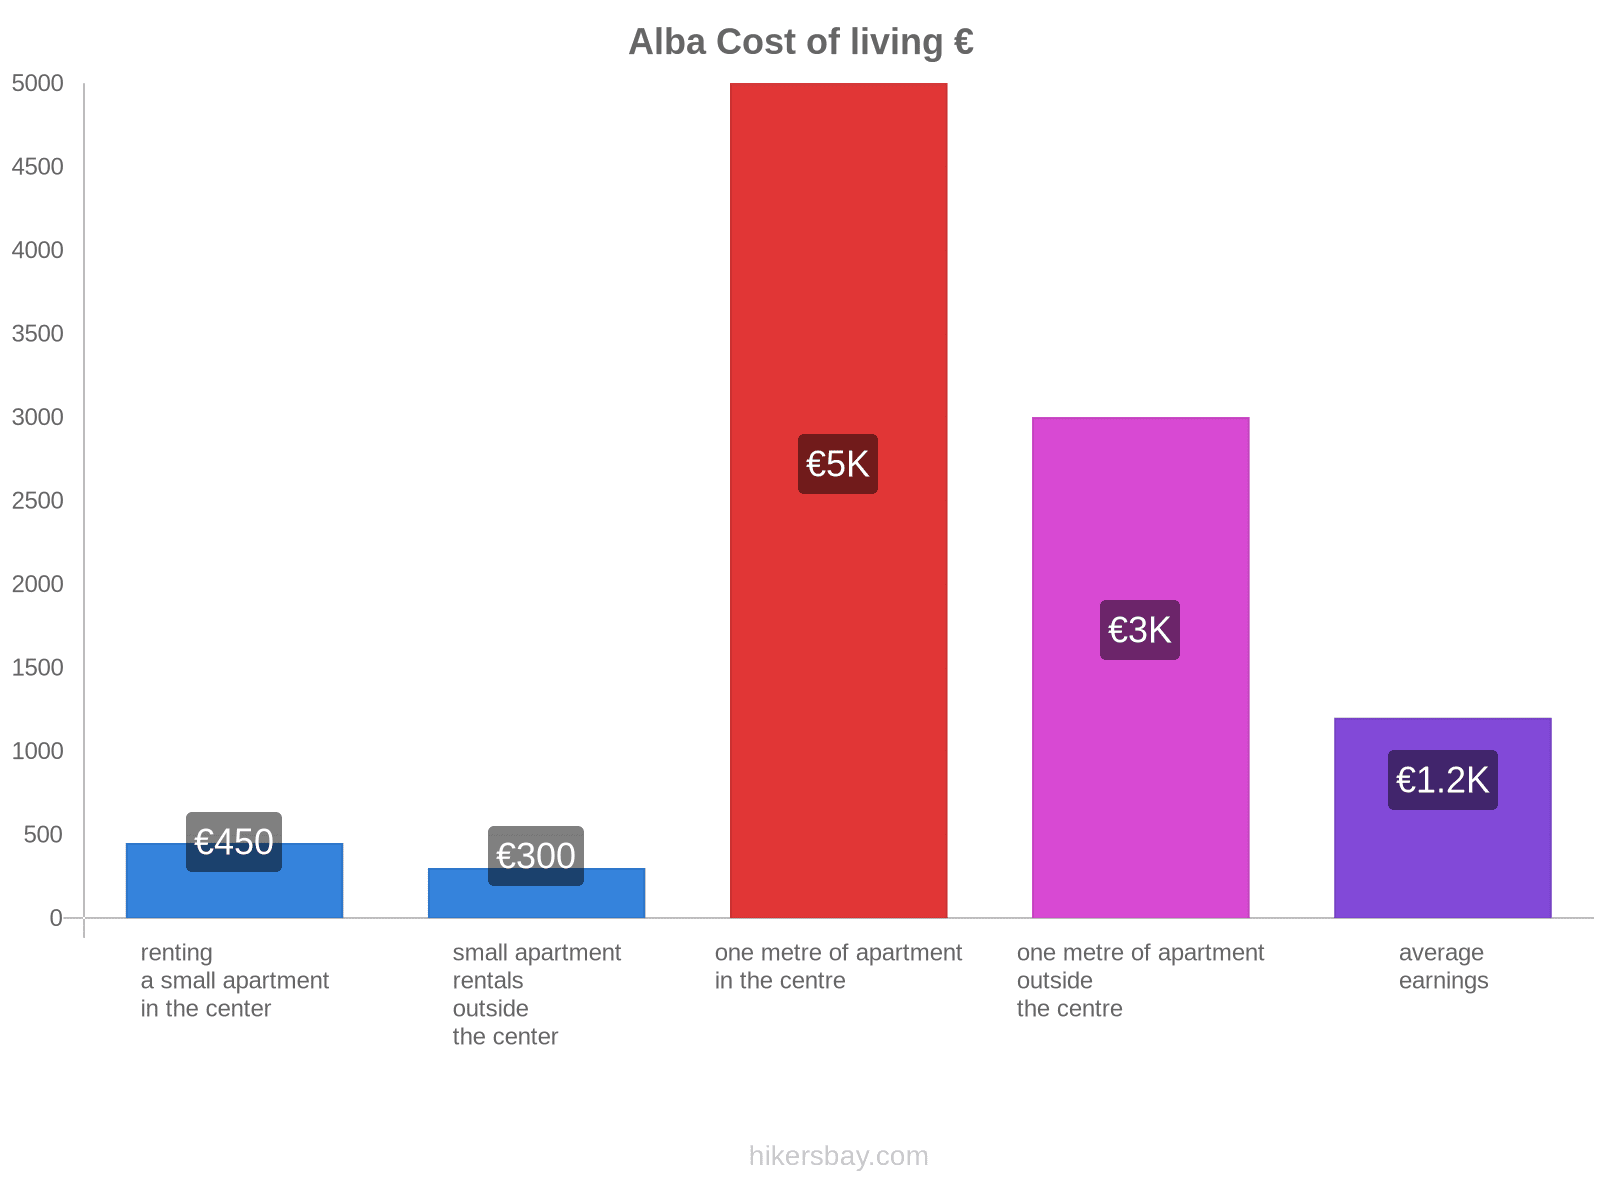 Alba cost of living hikersbay.com